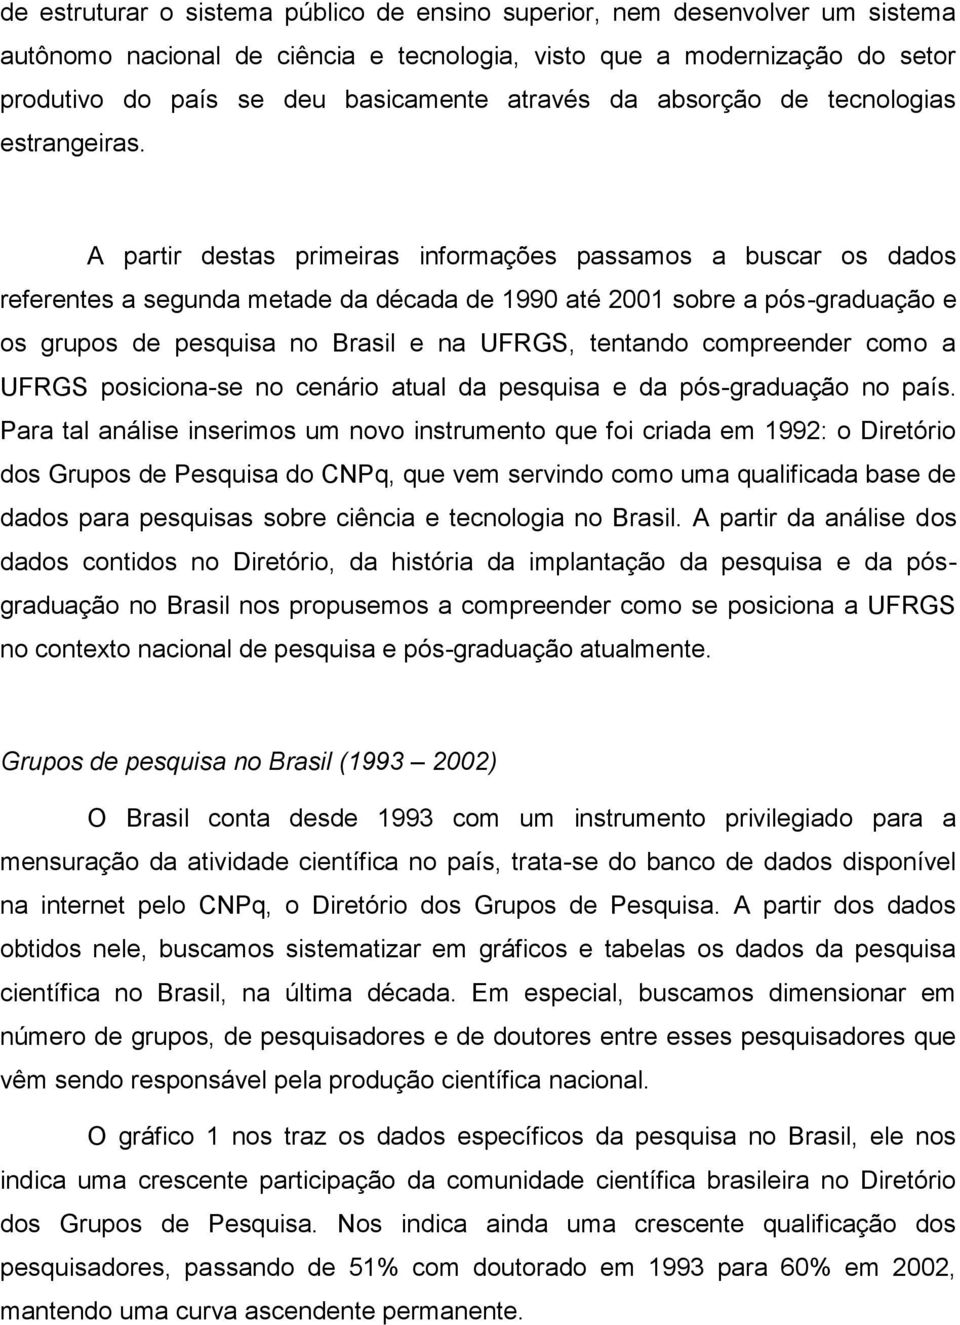 A partir destas primeiras informações passamos a buscar os dados referentes a segunda metade da década de 1990 até 2001 sobre a pós-graduação e os grupos de pesquisa no Brasil e na UFRGS, tentando